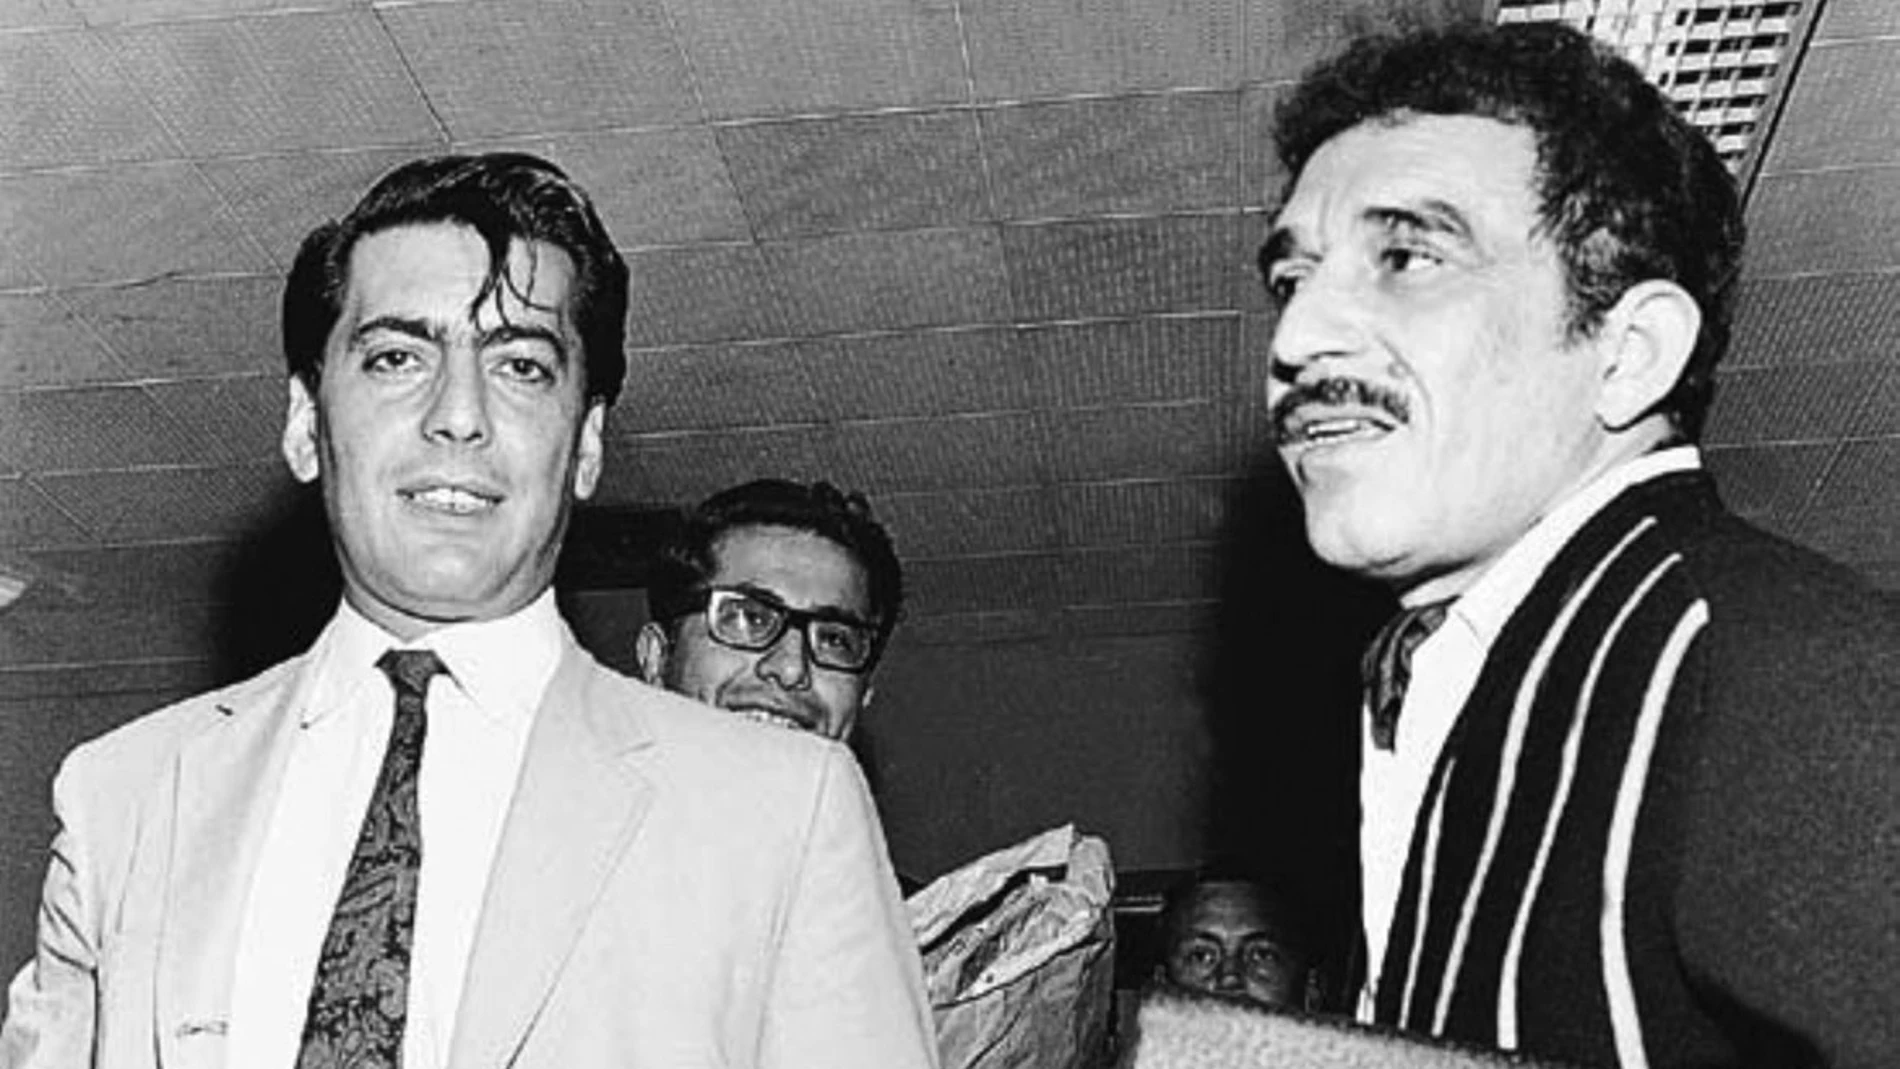 MARIO VARGAS LLOSA Y GABRIEL GARCIA MARQUEZ EN 1976